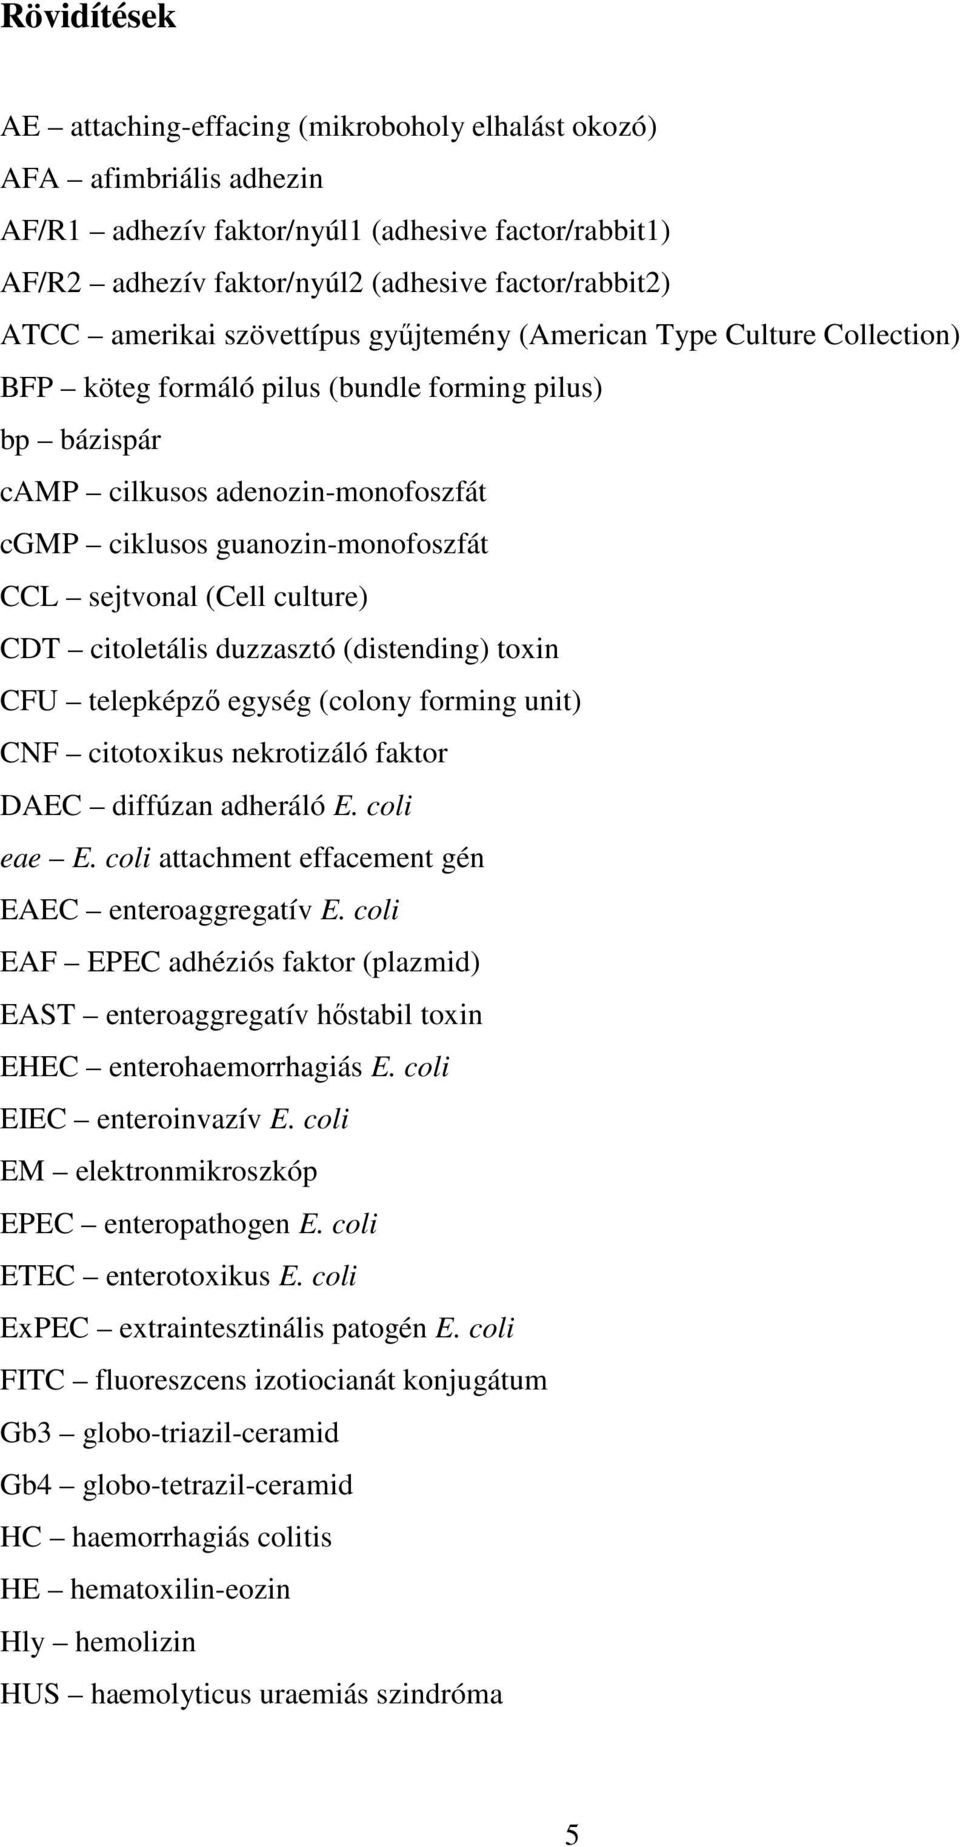 sejtvonal (Cell culture) CDT citoletális duzzasztó (distending) toxin CFU telepképző egység (colony forming unit) CNF citotoxikus nekrotizáló faktor DAEC diffúzan adheráló E. coli eae E.